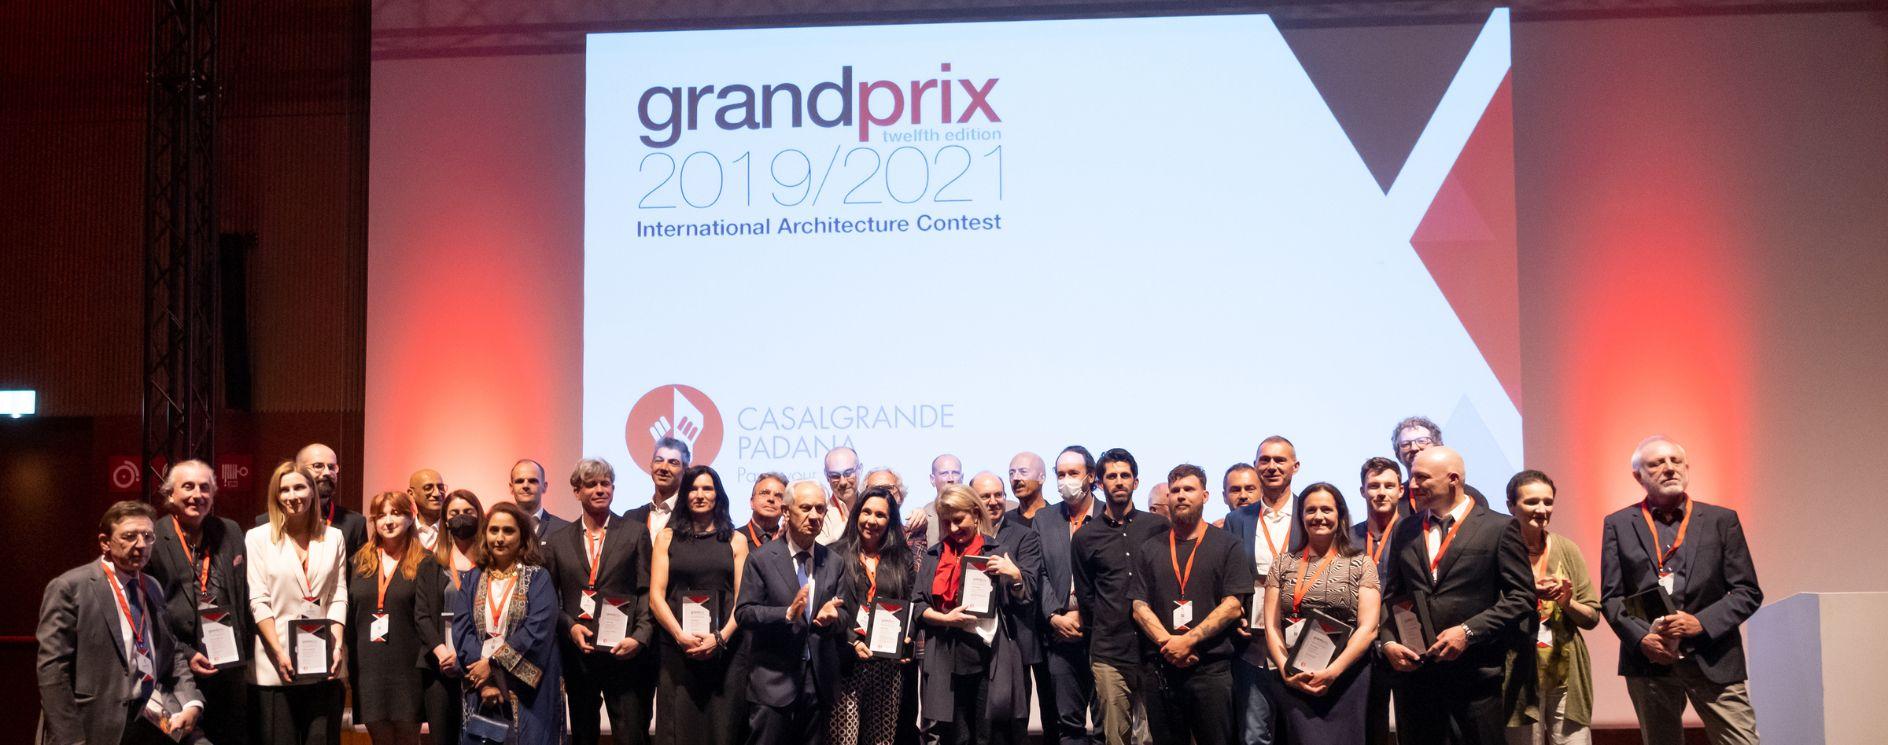 Internationaler ARchitekturwettbewerb Grand Prix | Casalgrande Padana